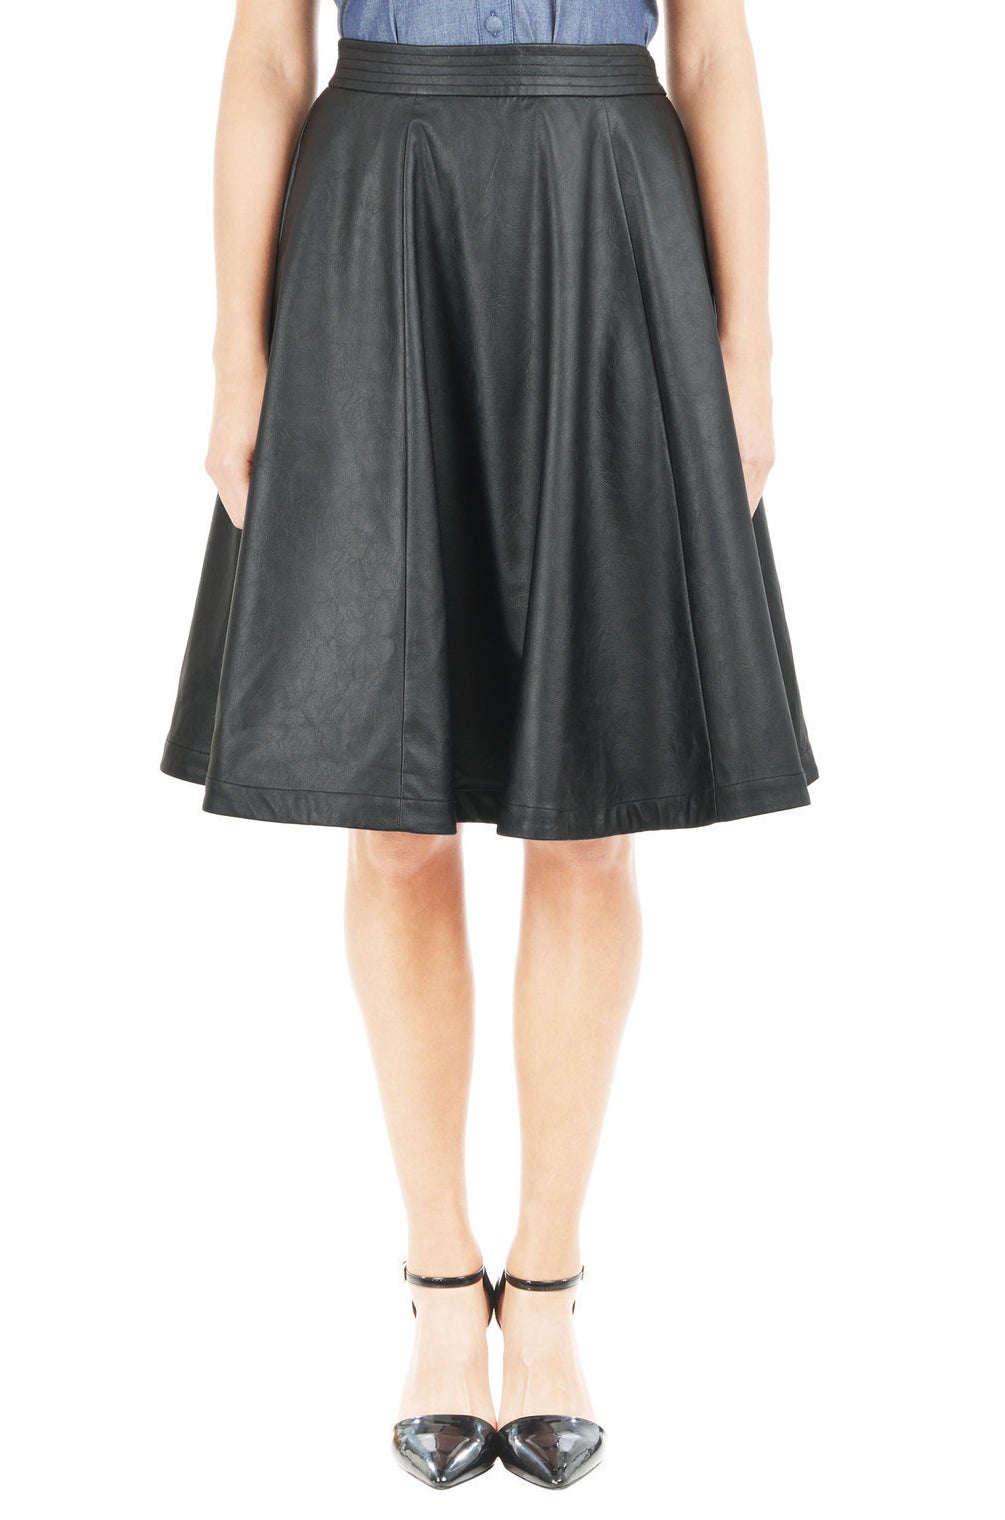 Skirt, $89.95